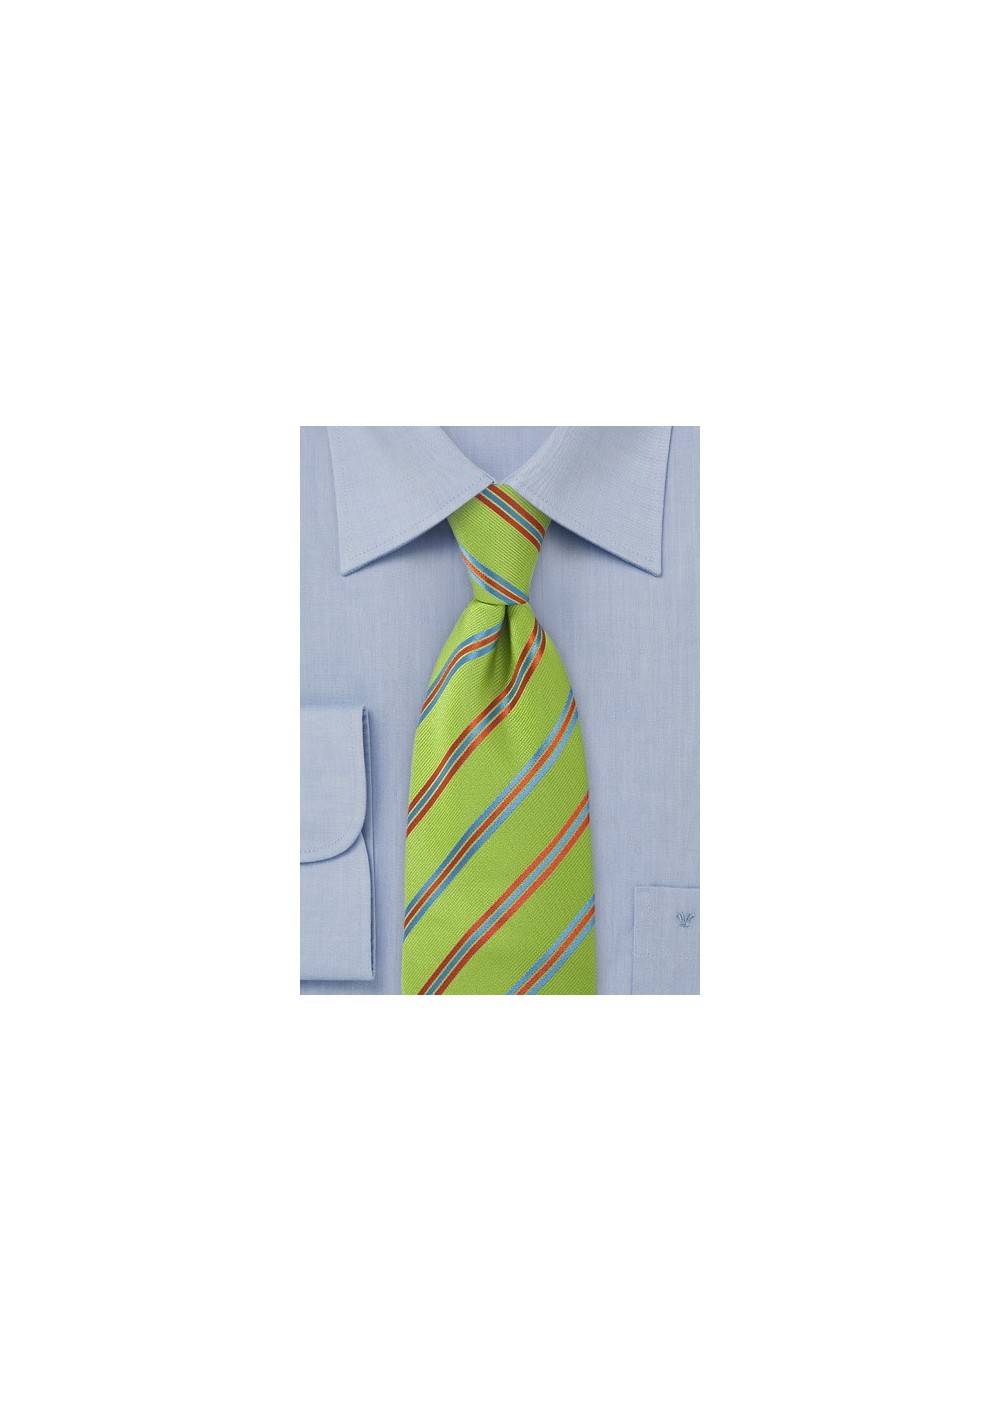 Striped Pea Green Tie